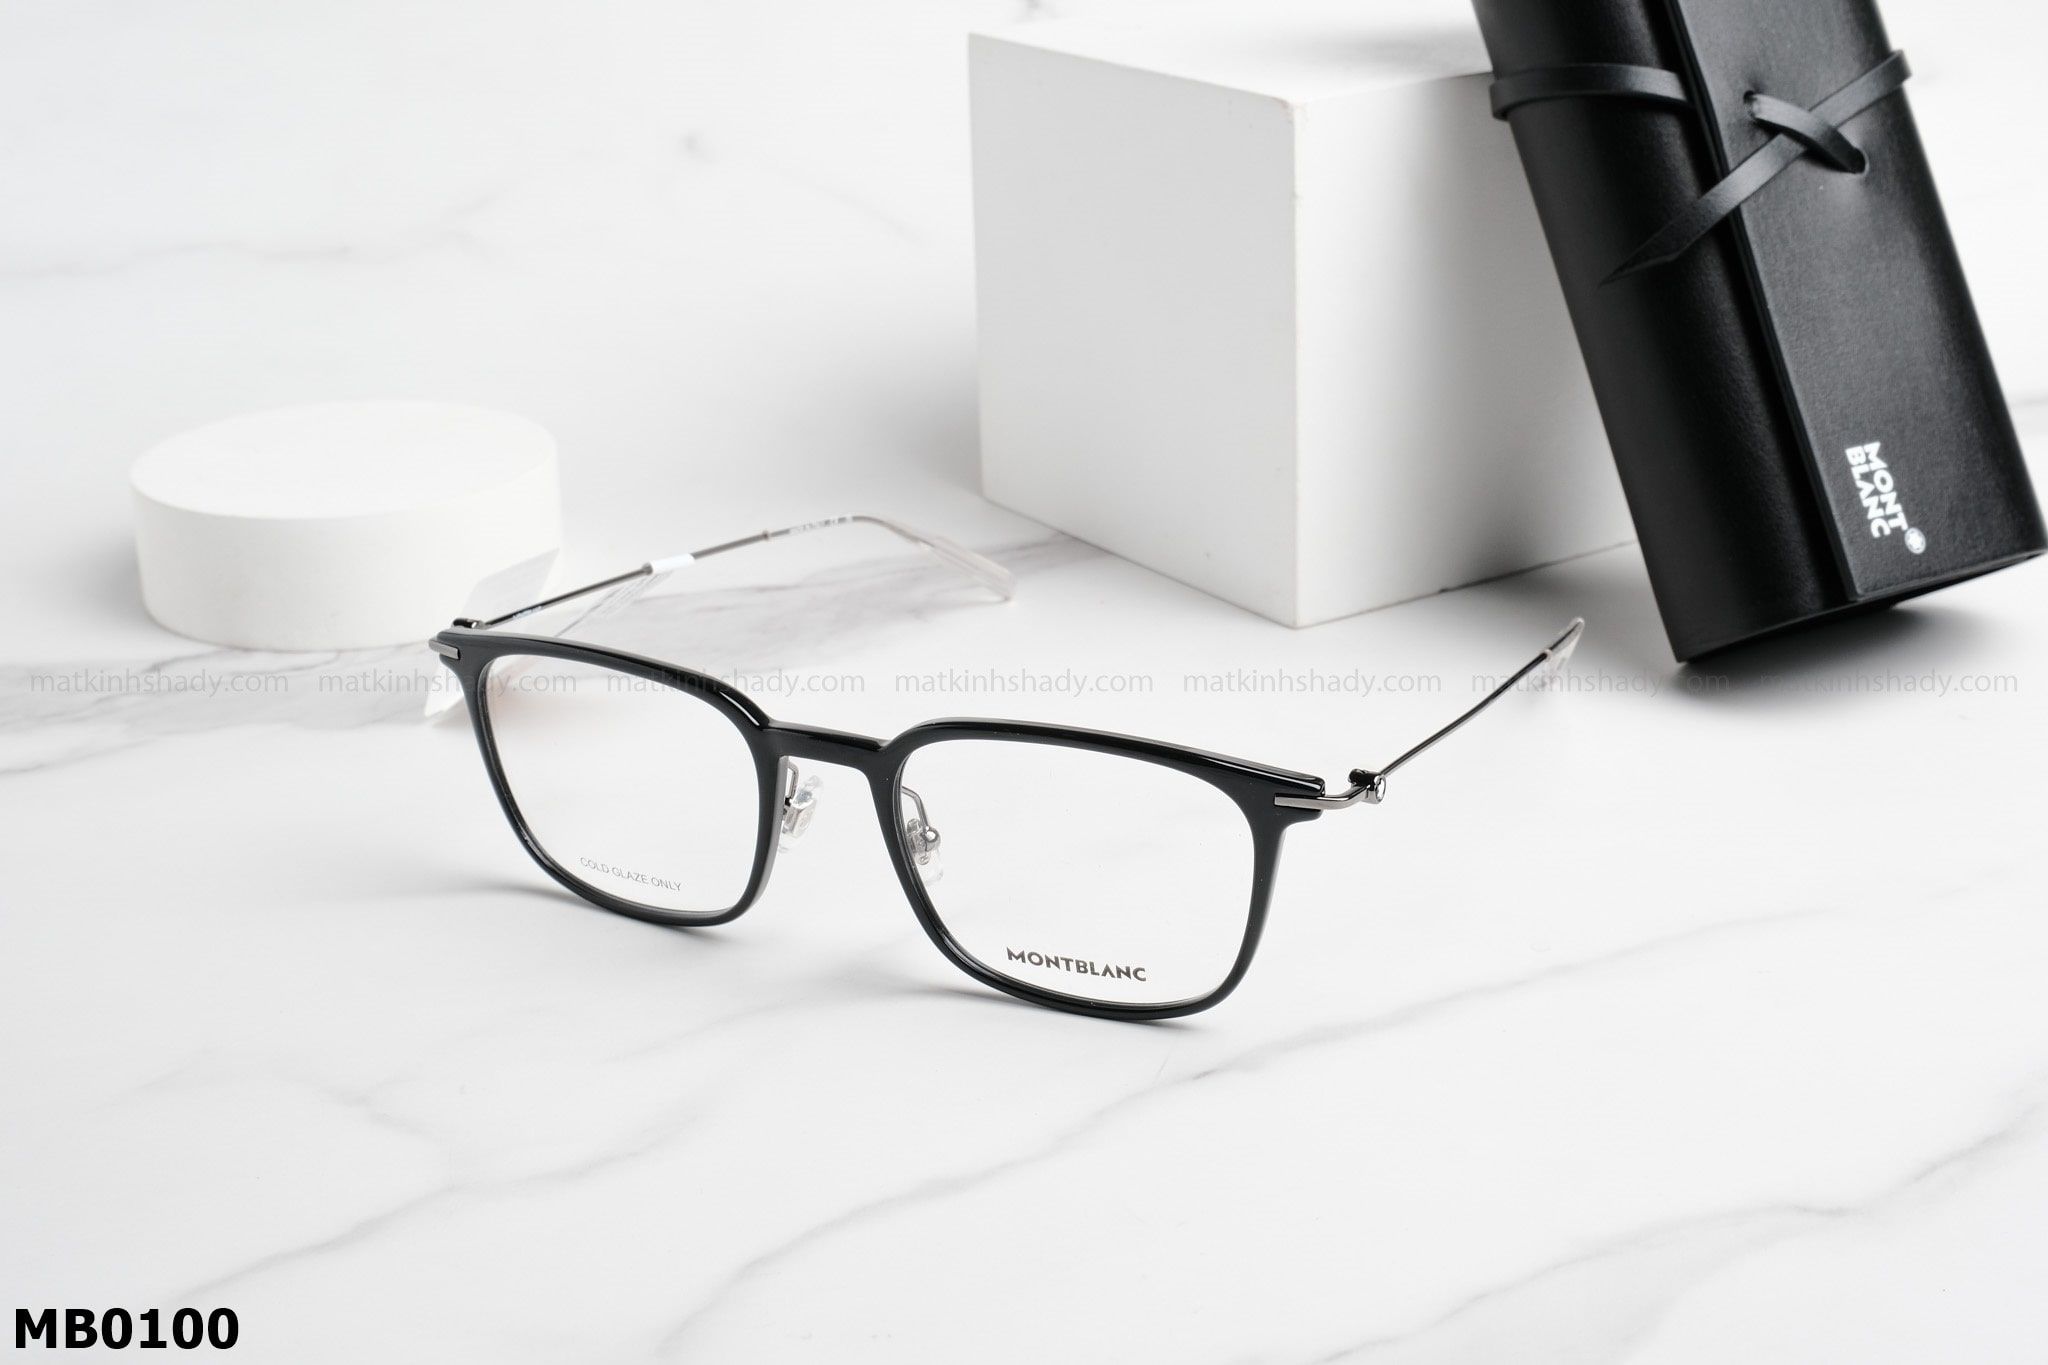  Montblanc Eyewear - Glasses - MB0100 